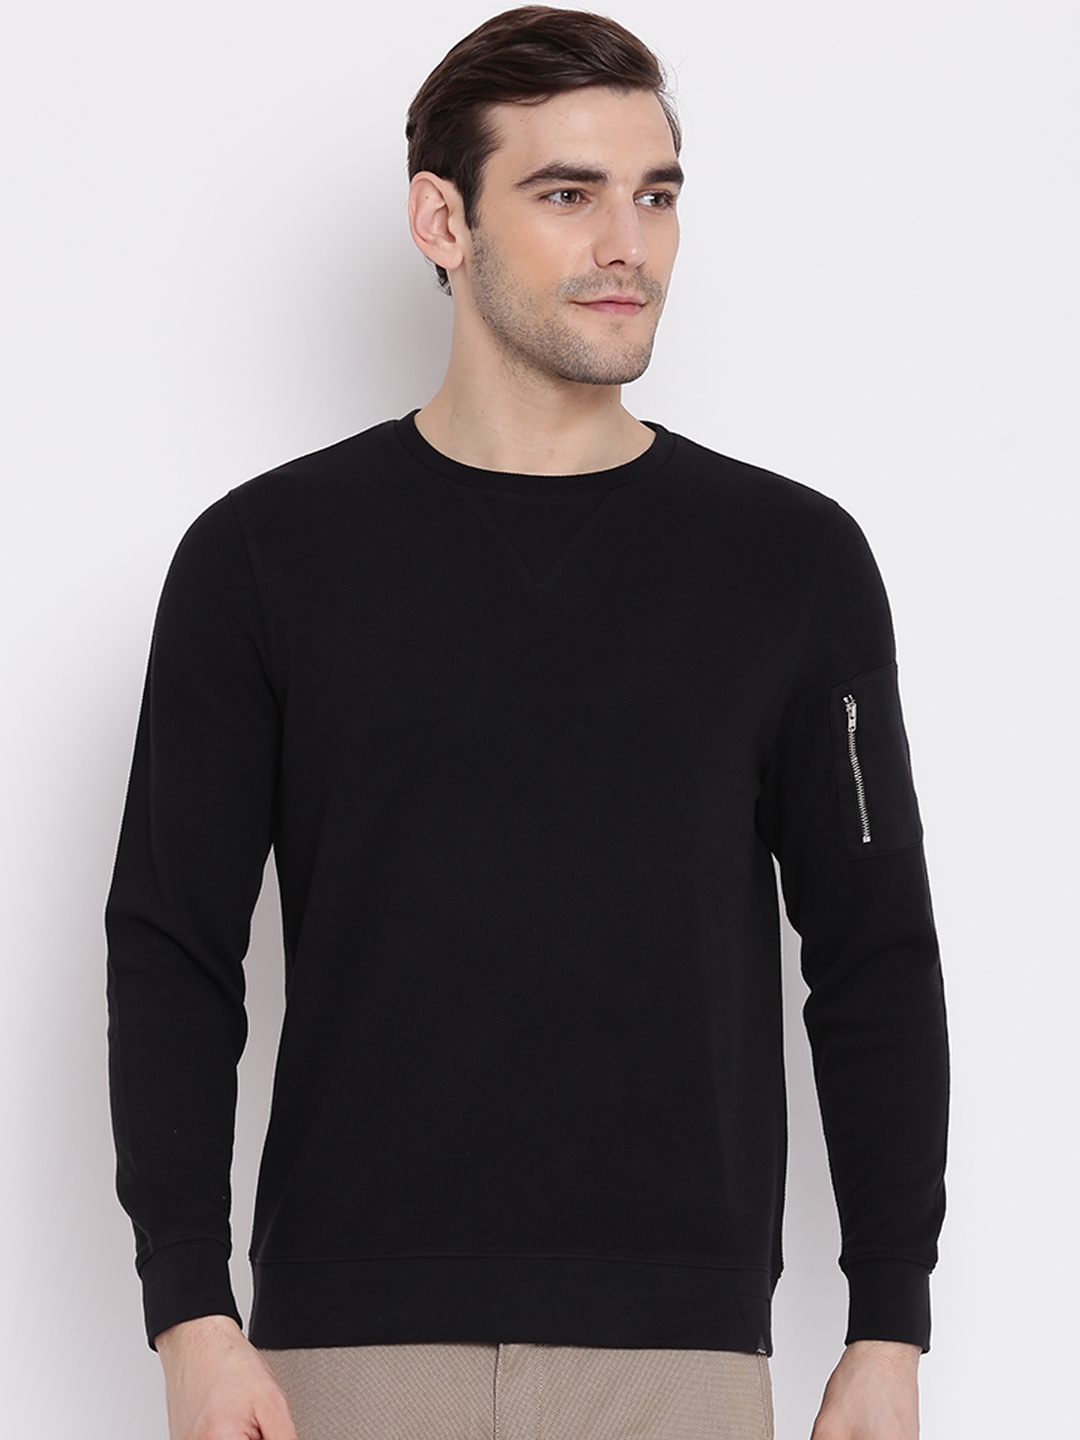 Blackberrys Men Black Sweatshirt (XXL) by Myntra